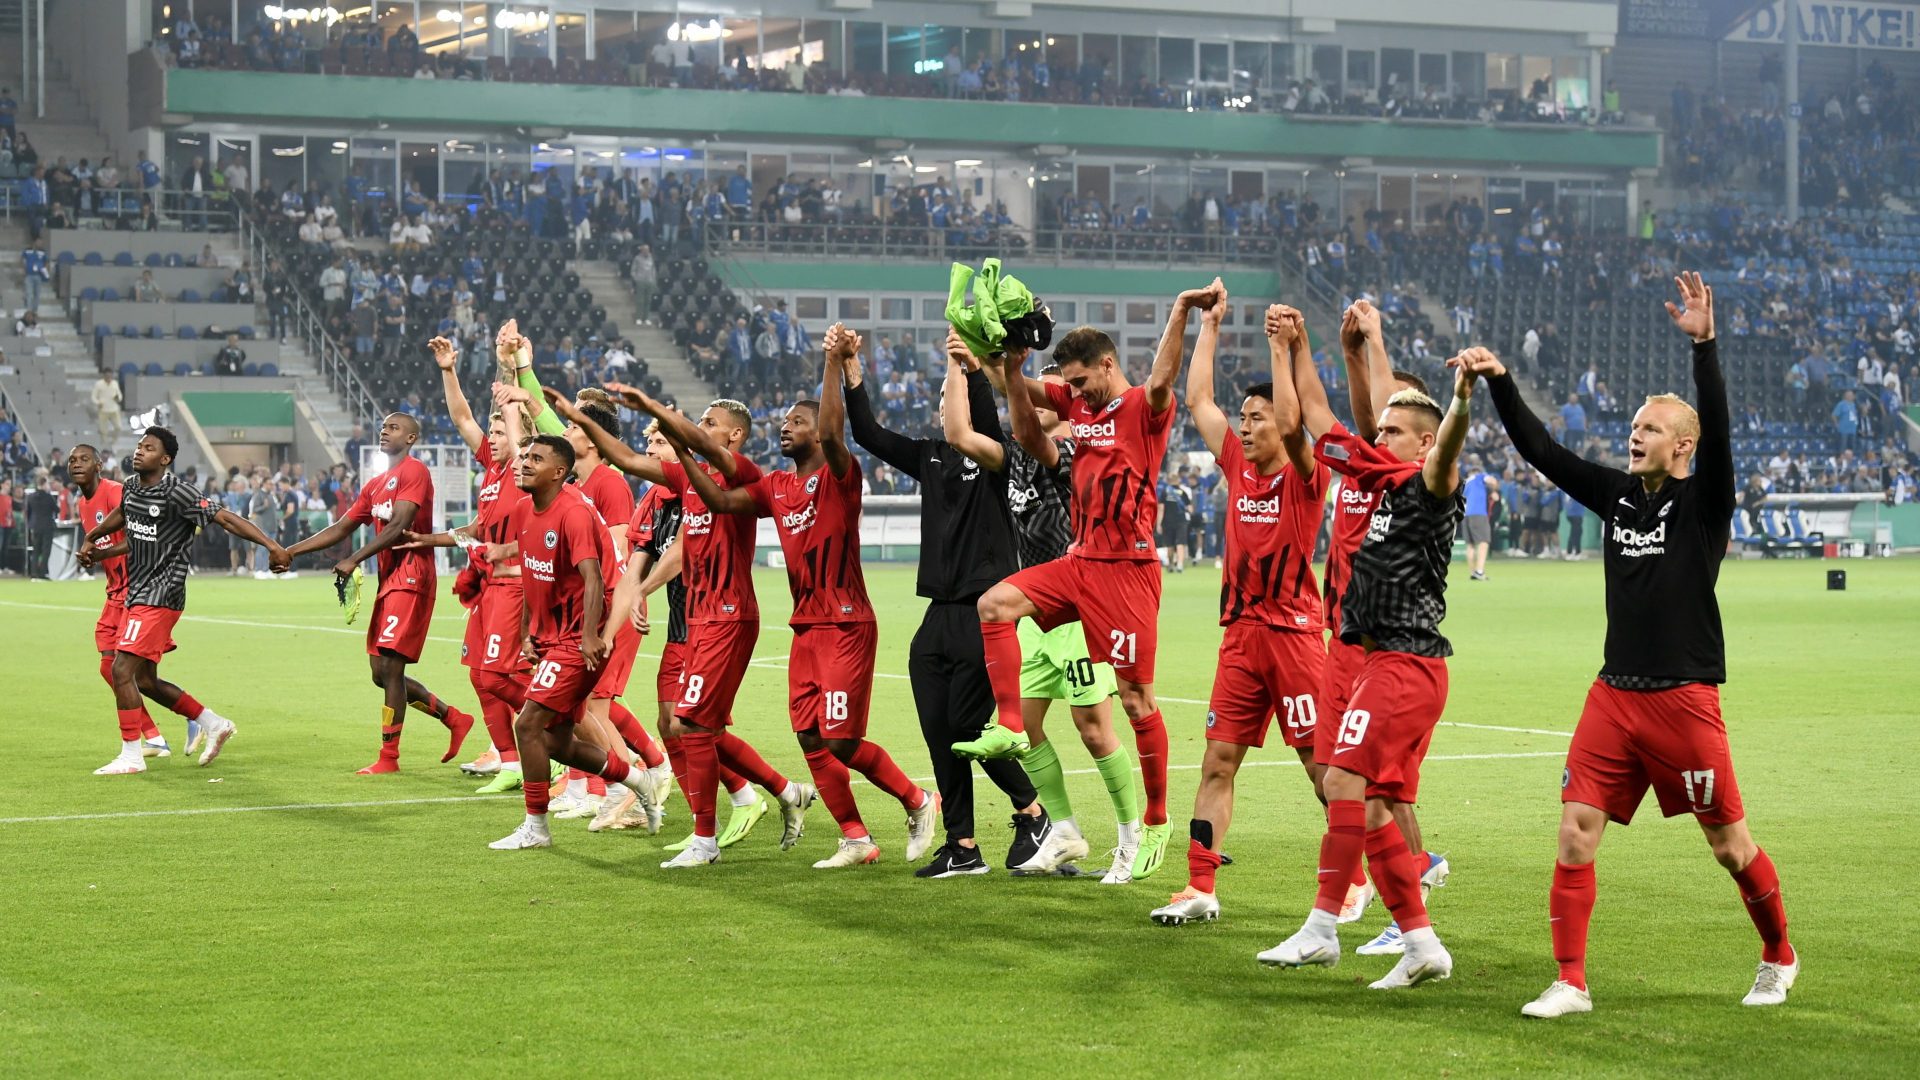 Die Mannschaft von Eintracht Frankfurt jubelt nach ihrem Sieg im DFB-Pokal über Magdeburg. | REUTERS